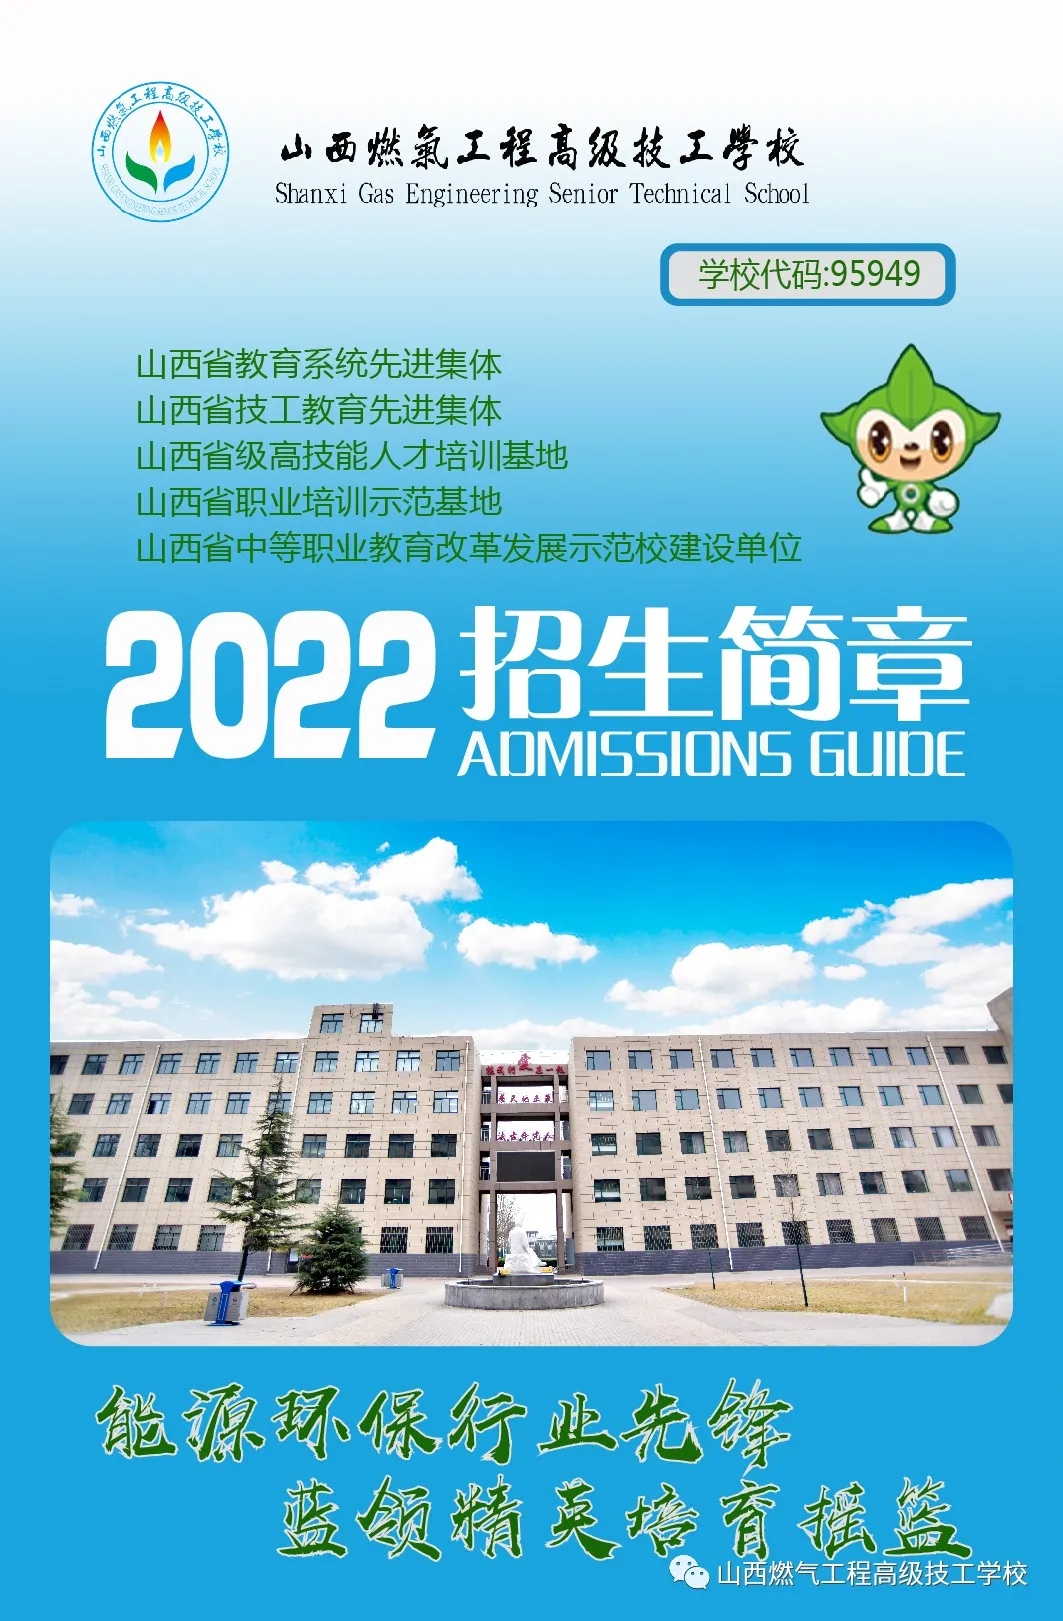 山西燃气工程高级技工学校2022年招生简章